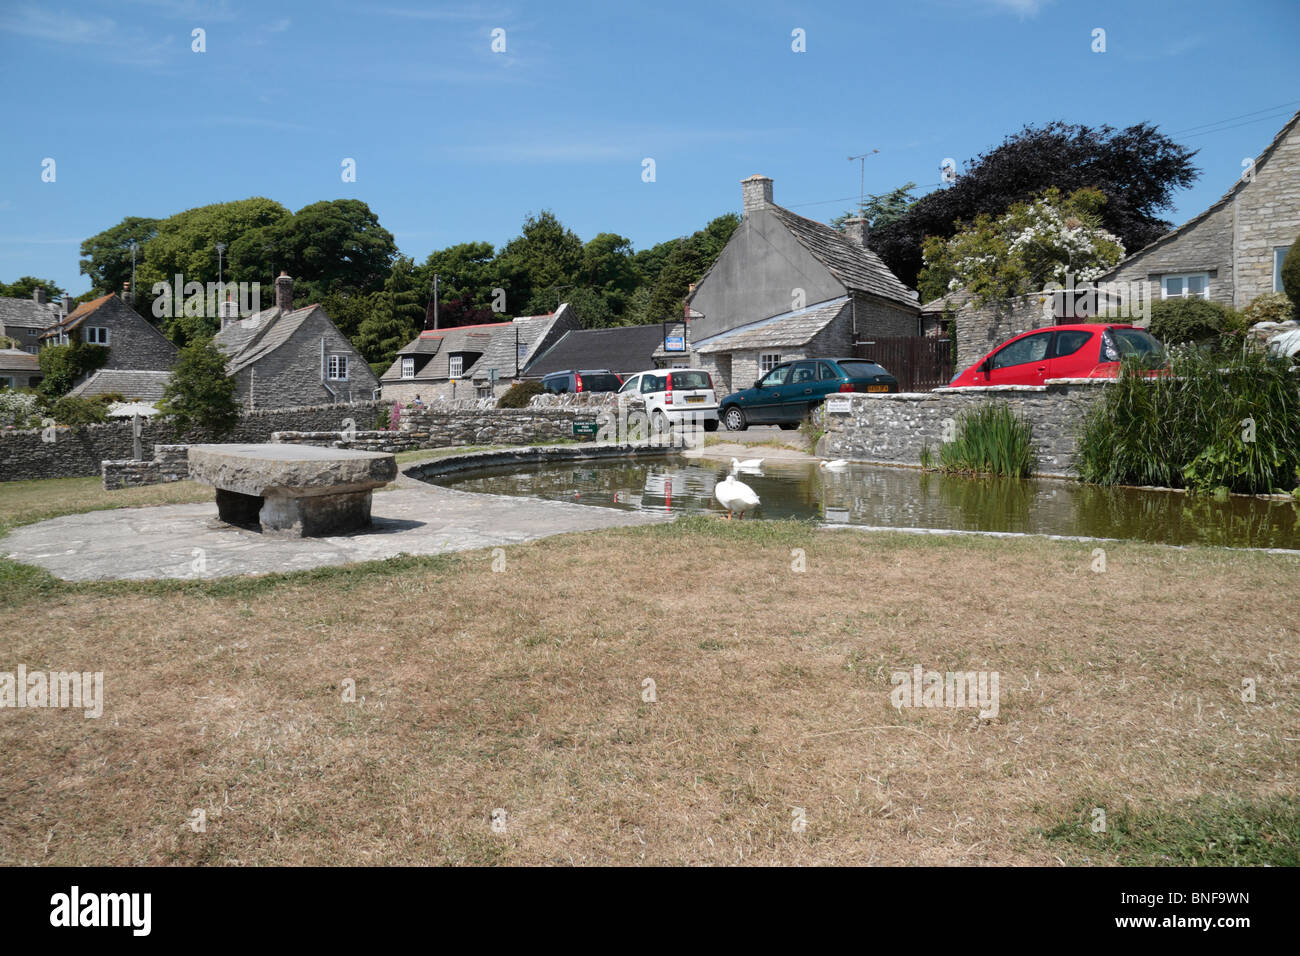 Das Dorf Ententeich in das Dorf der Wert Matravers, Isle of Purbeck, Dorset, Großbritannien Stockfoto